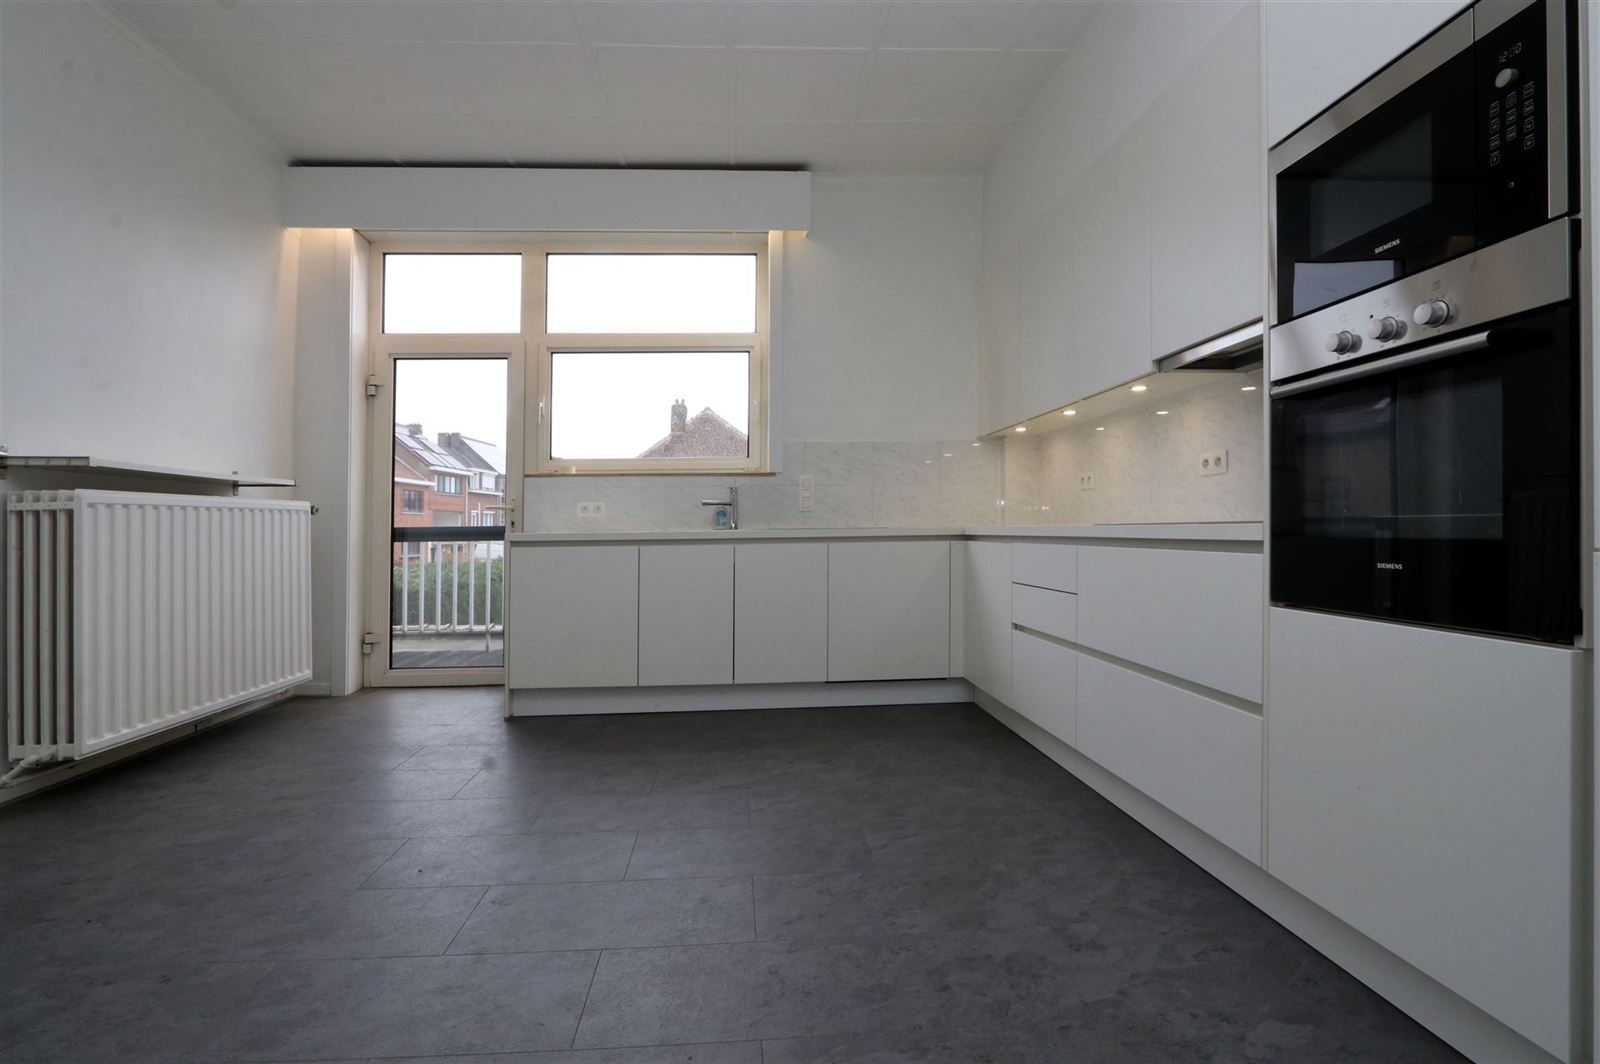 Duplex appartement (150m²) met 3 slaapkamers en terras te Centrum Beersel foto 4